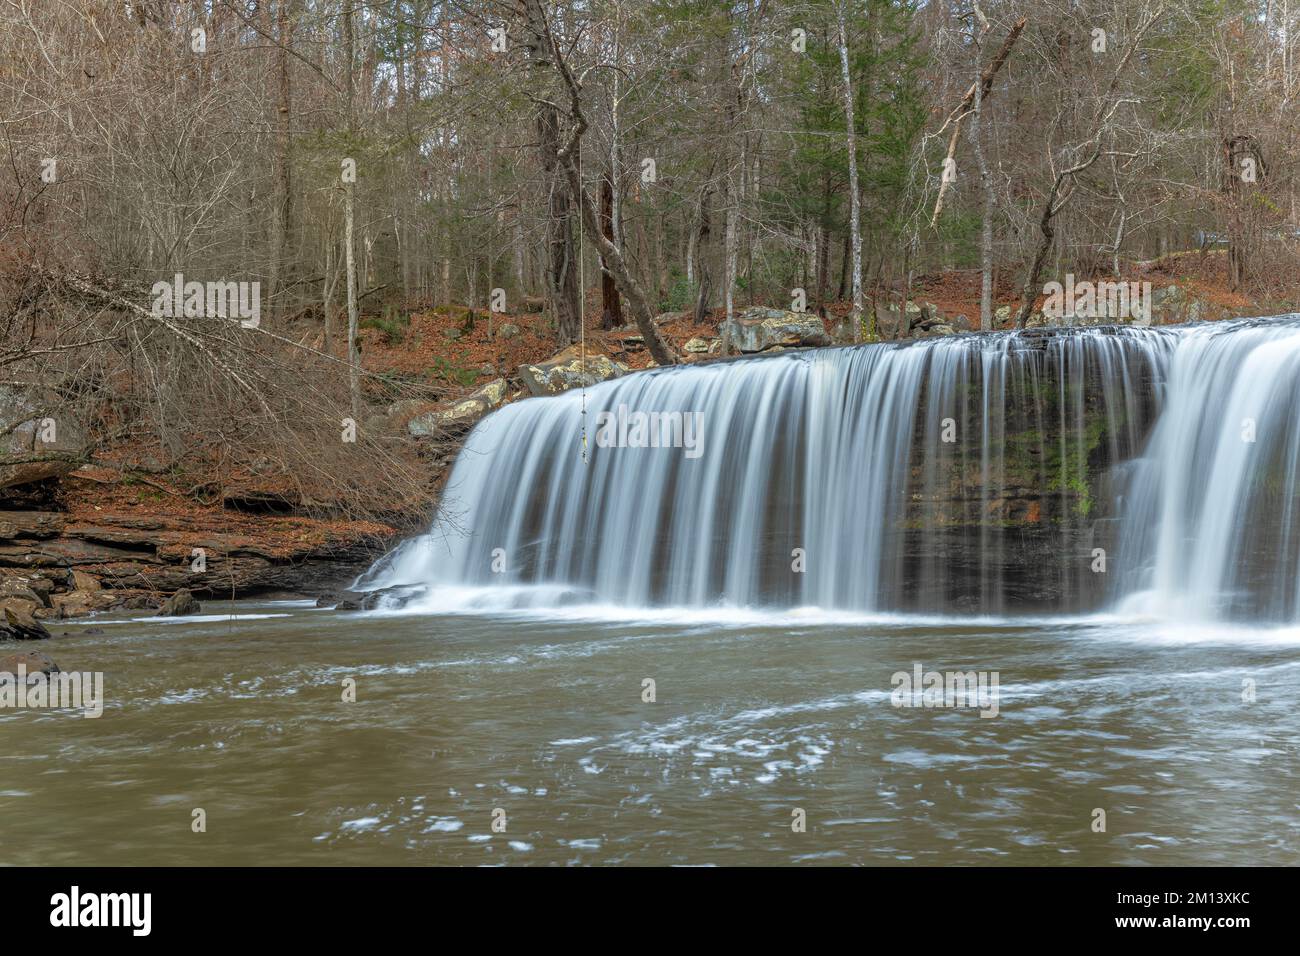 Le splendide cascate Potter's Falls nell'altopiano Cumberland del Tennessee scorrono attraverso piscine d'acqua poco profonde e sopra la scogliera per formare una splendida sinfonia d'acqua A. Foto Stock